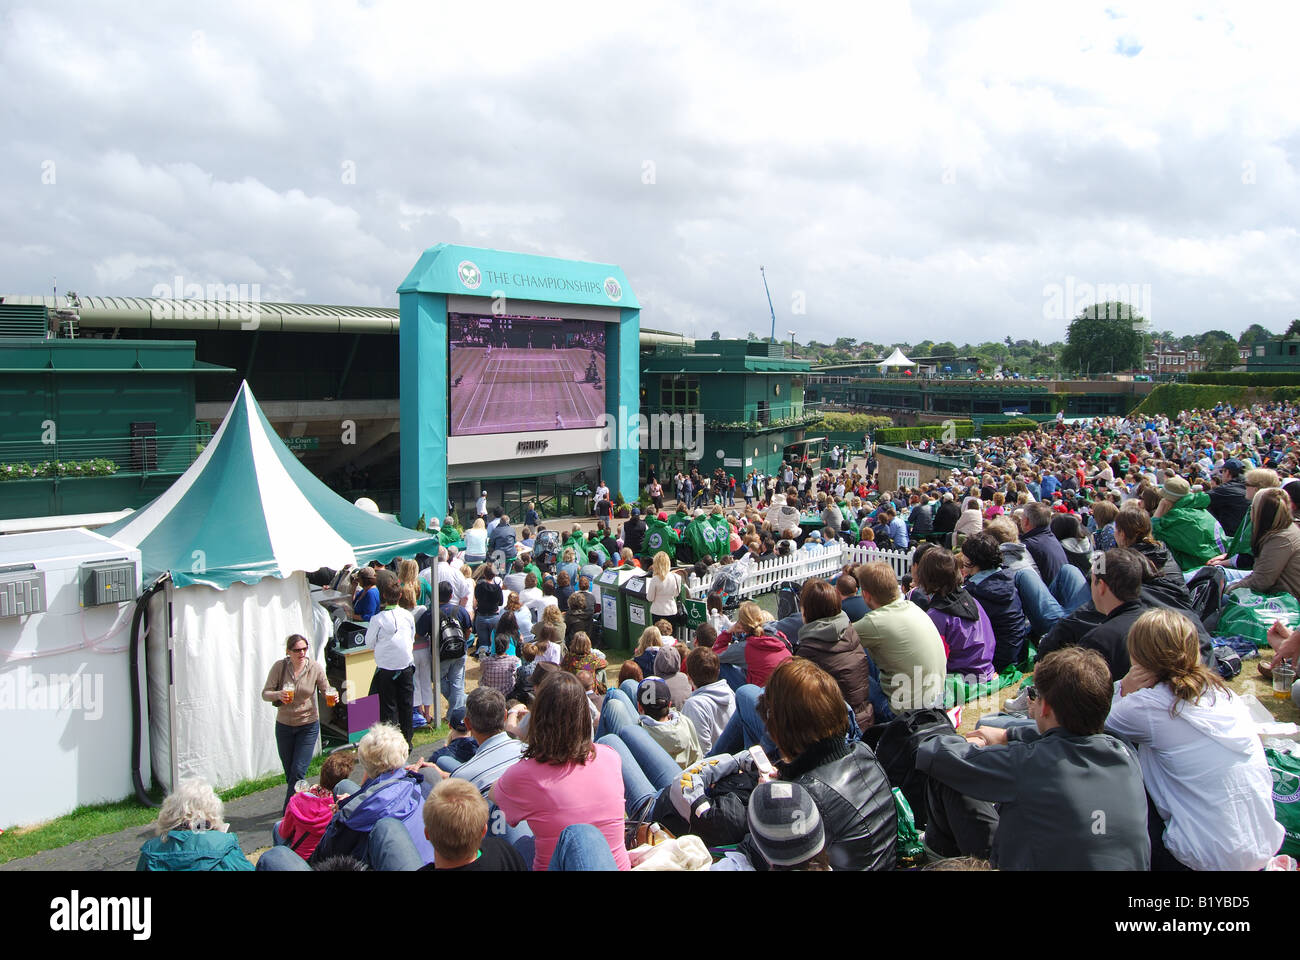 Spectateurs regardant le tennis sur Henman Hill, les Championnats, Wimbledon, Merton Borough, Greater London, Angleterre, Royaume-Uni Banque D'Images